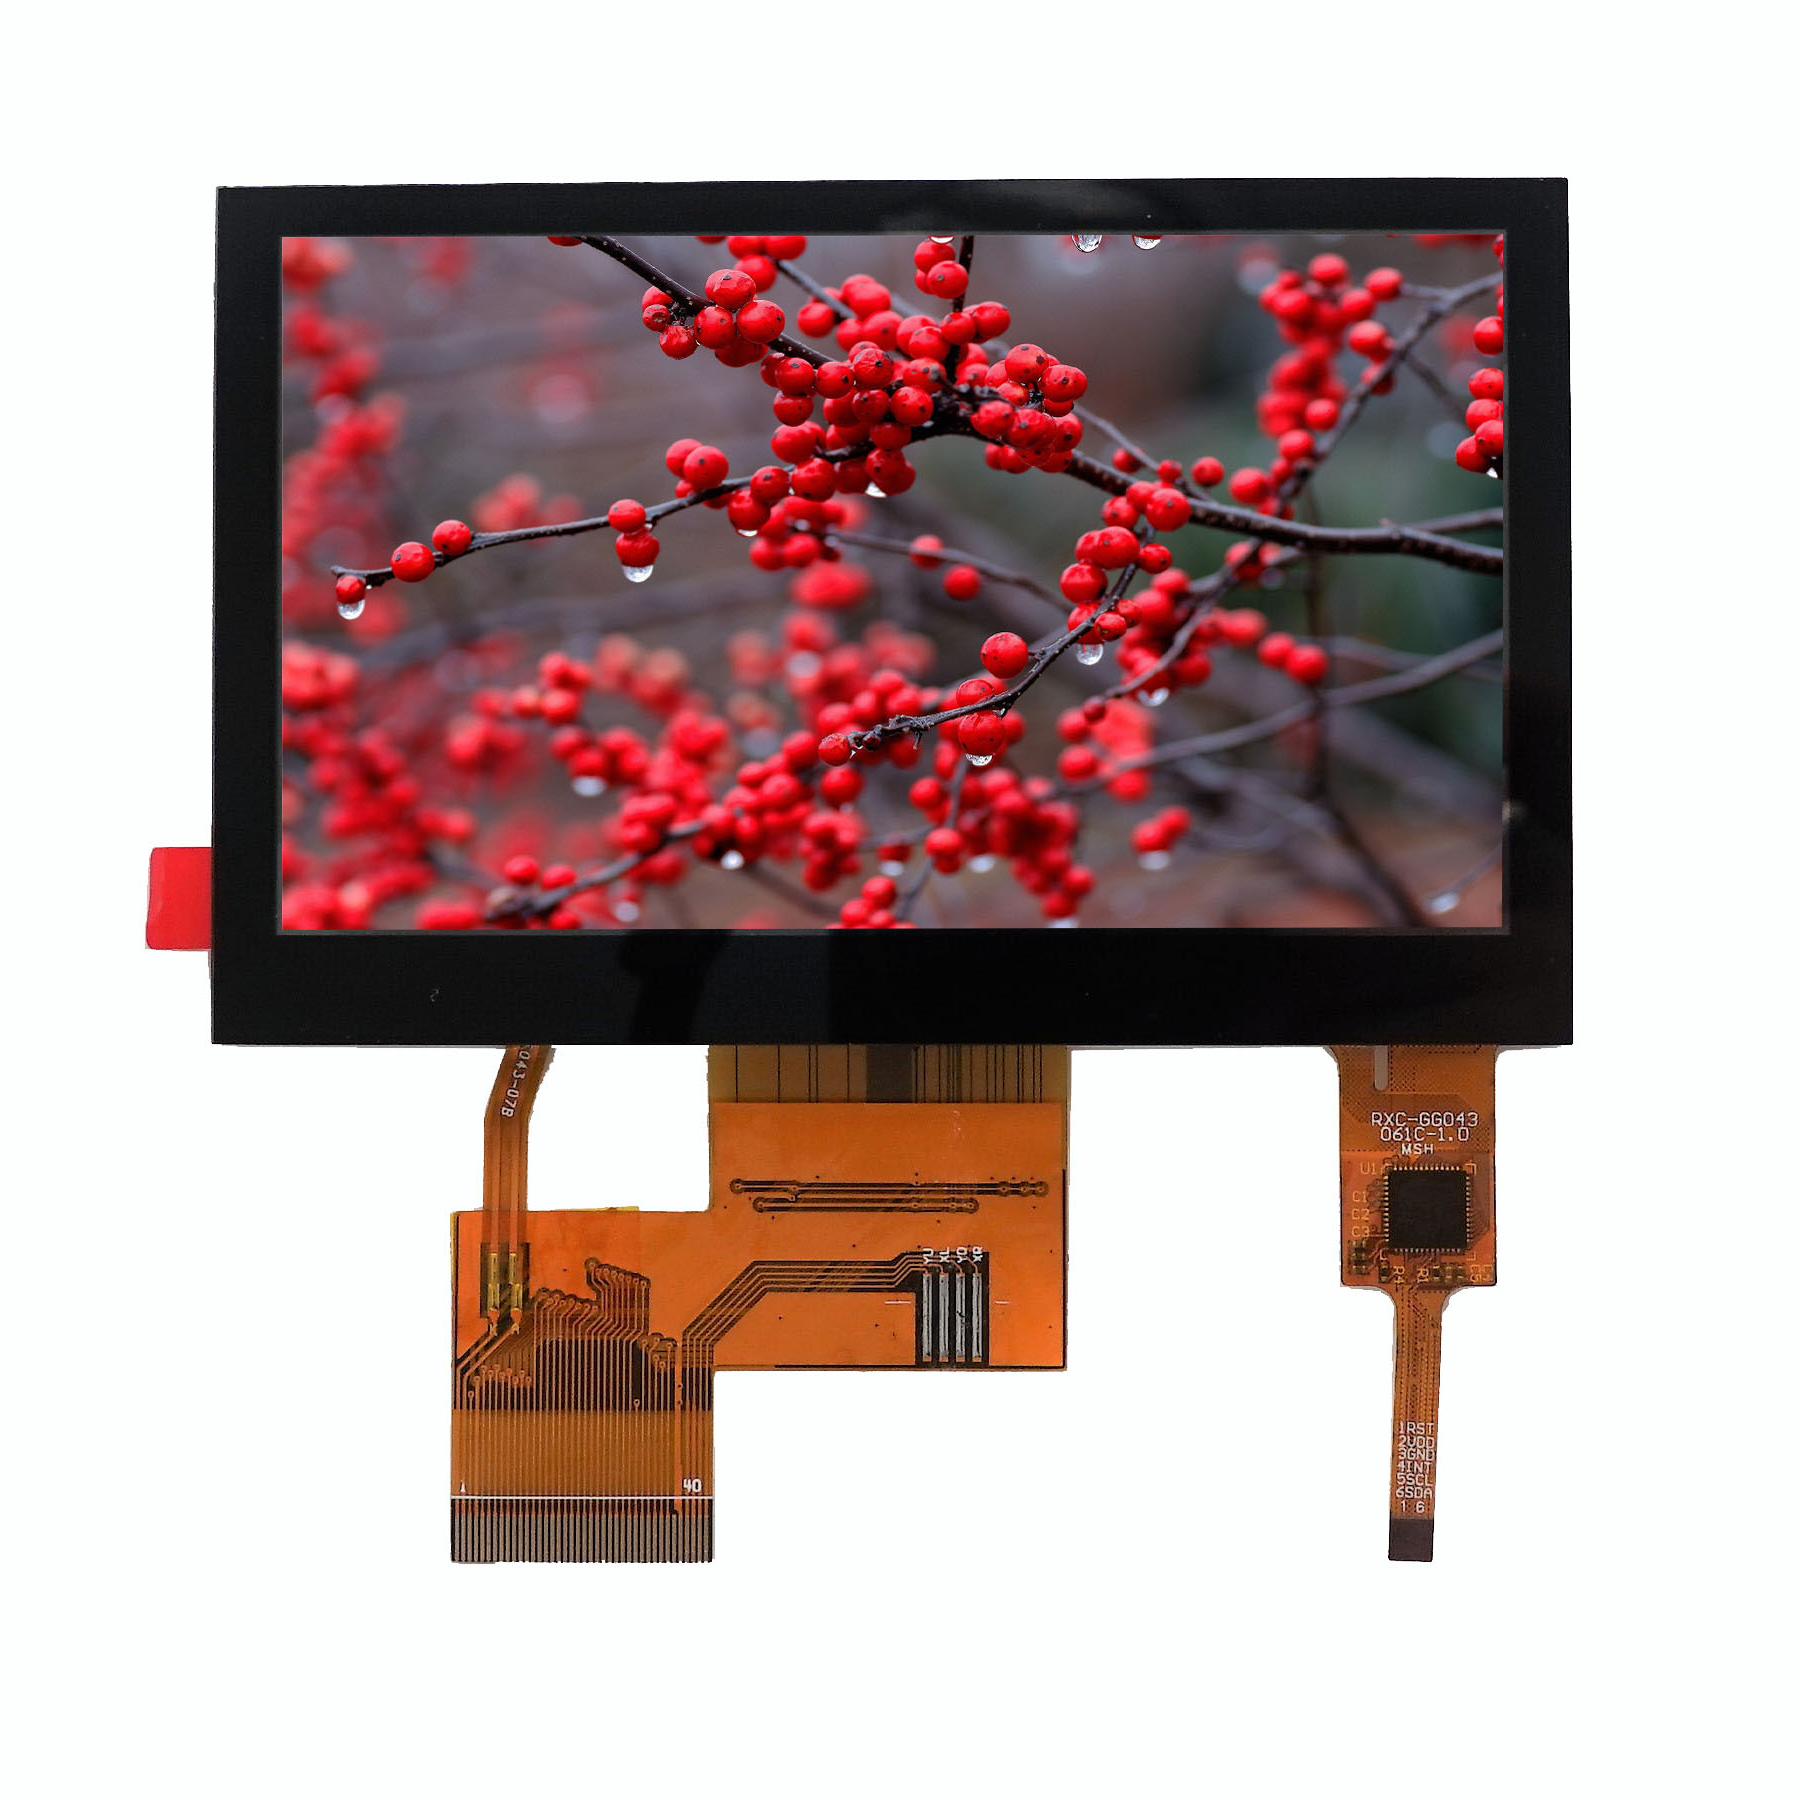 Hlavné rozhranie obrazovky LCD a popis produktu